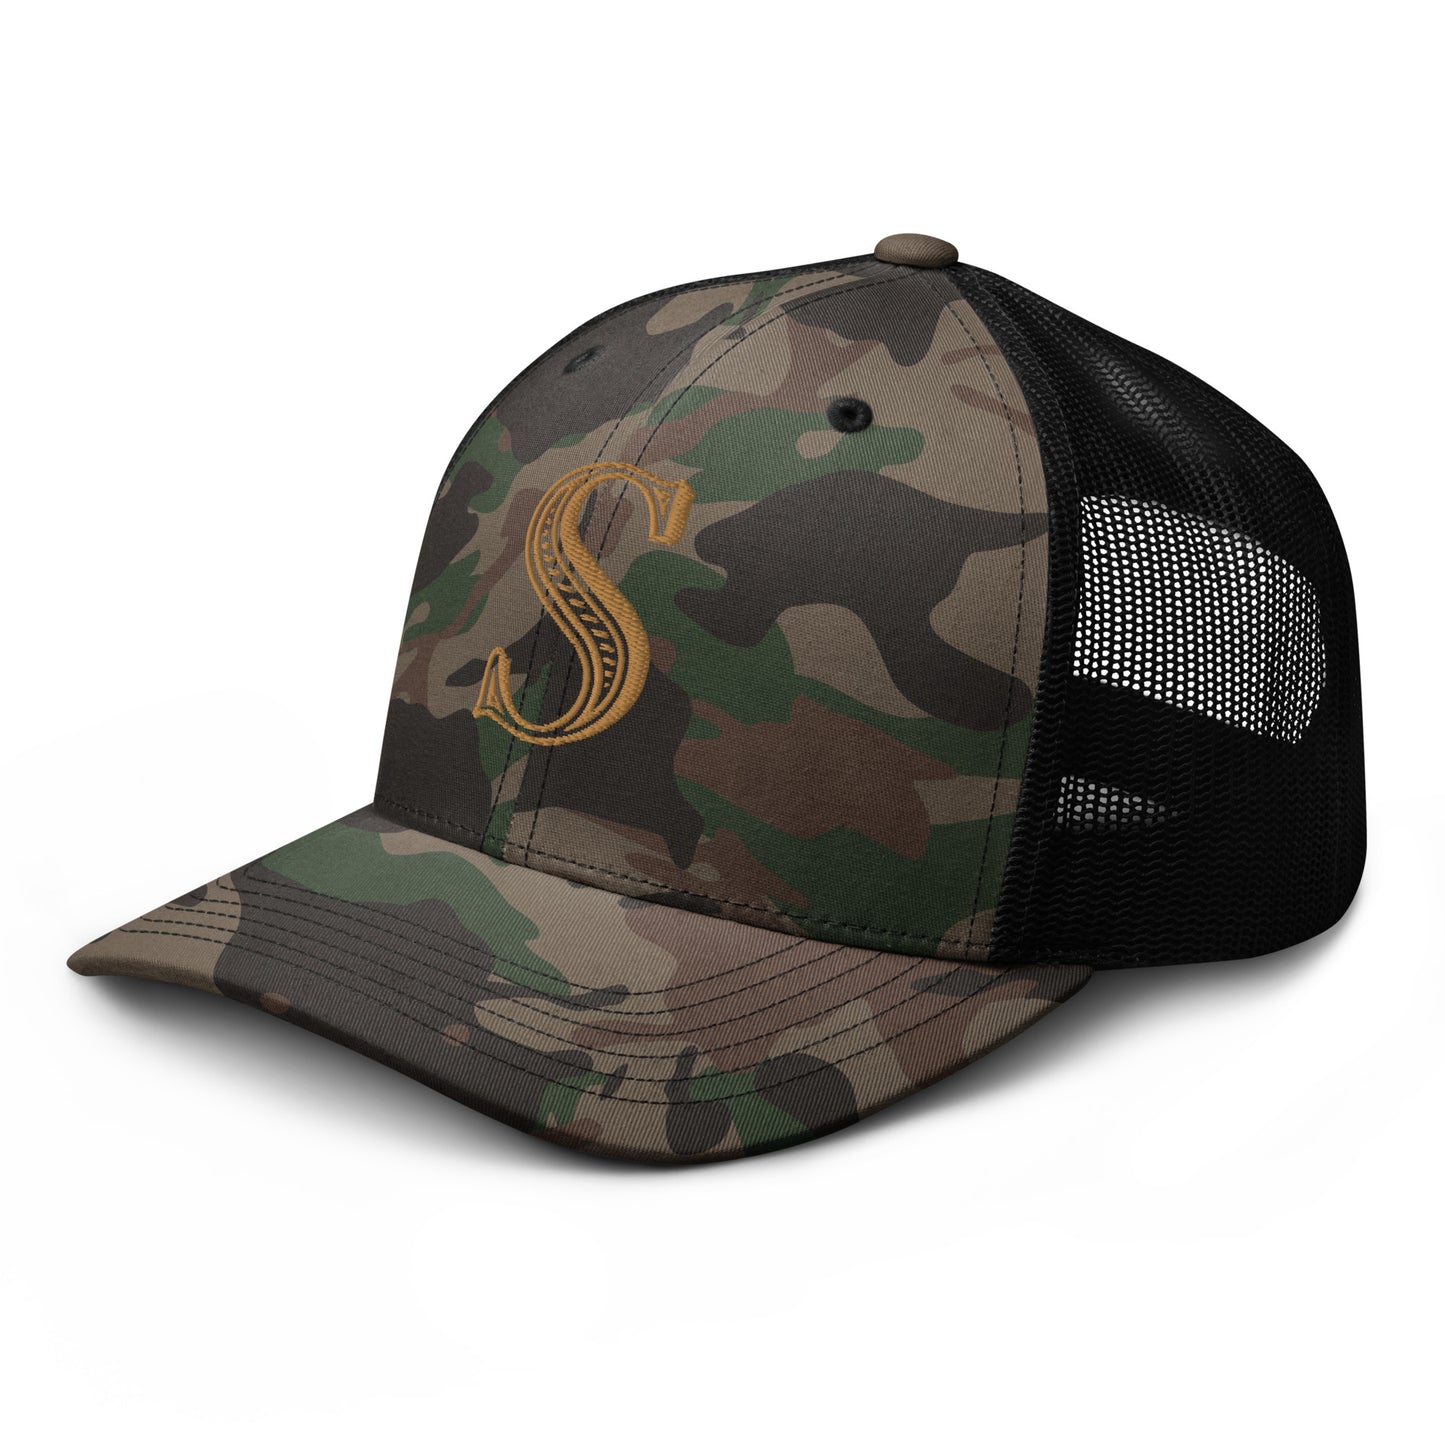 Camouflage S trucker hat